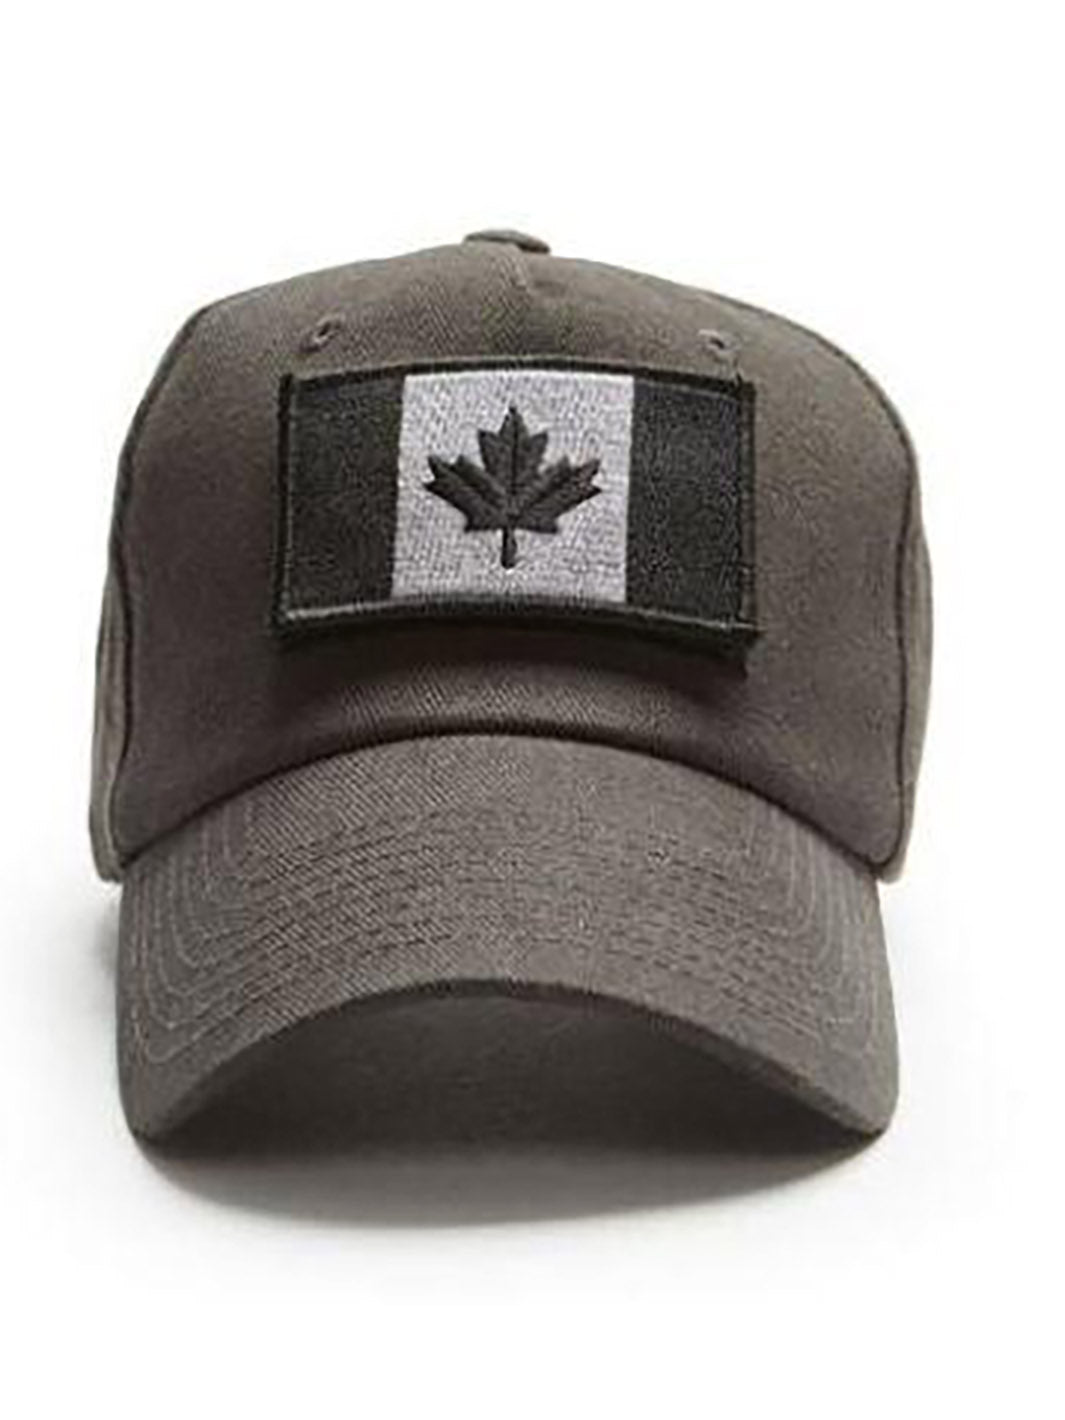 Casquette grise avec drapeau du Canada charbon